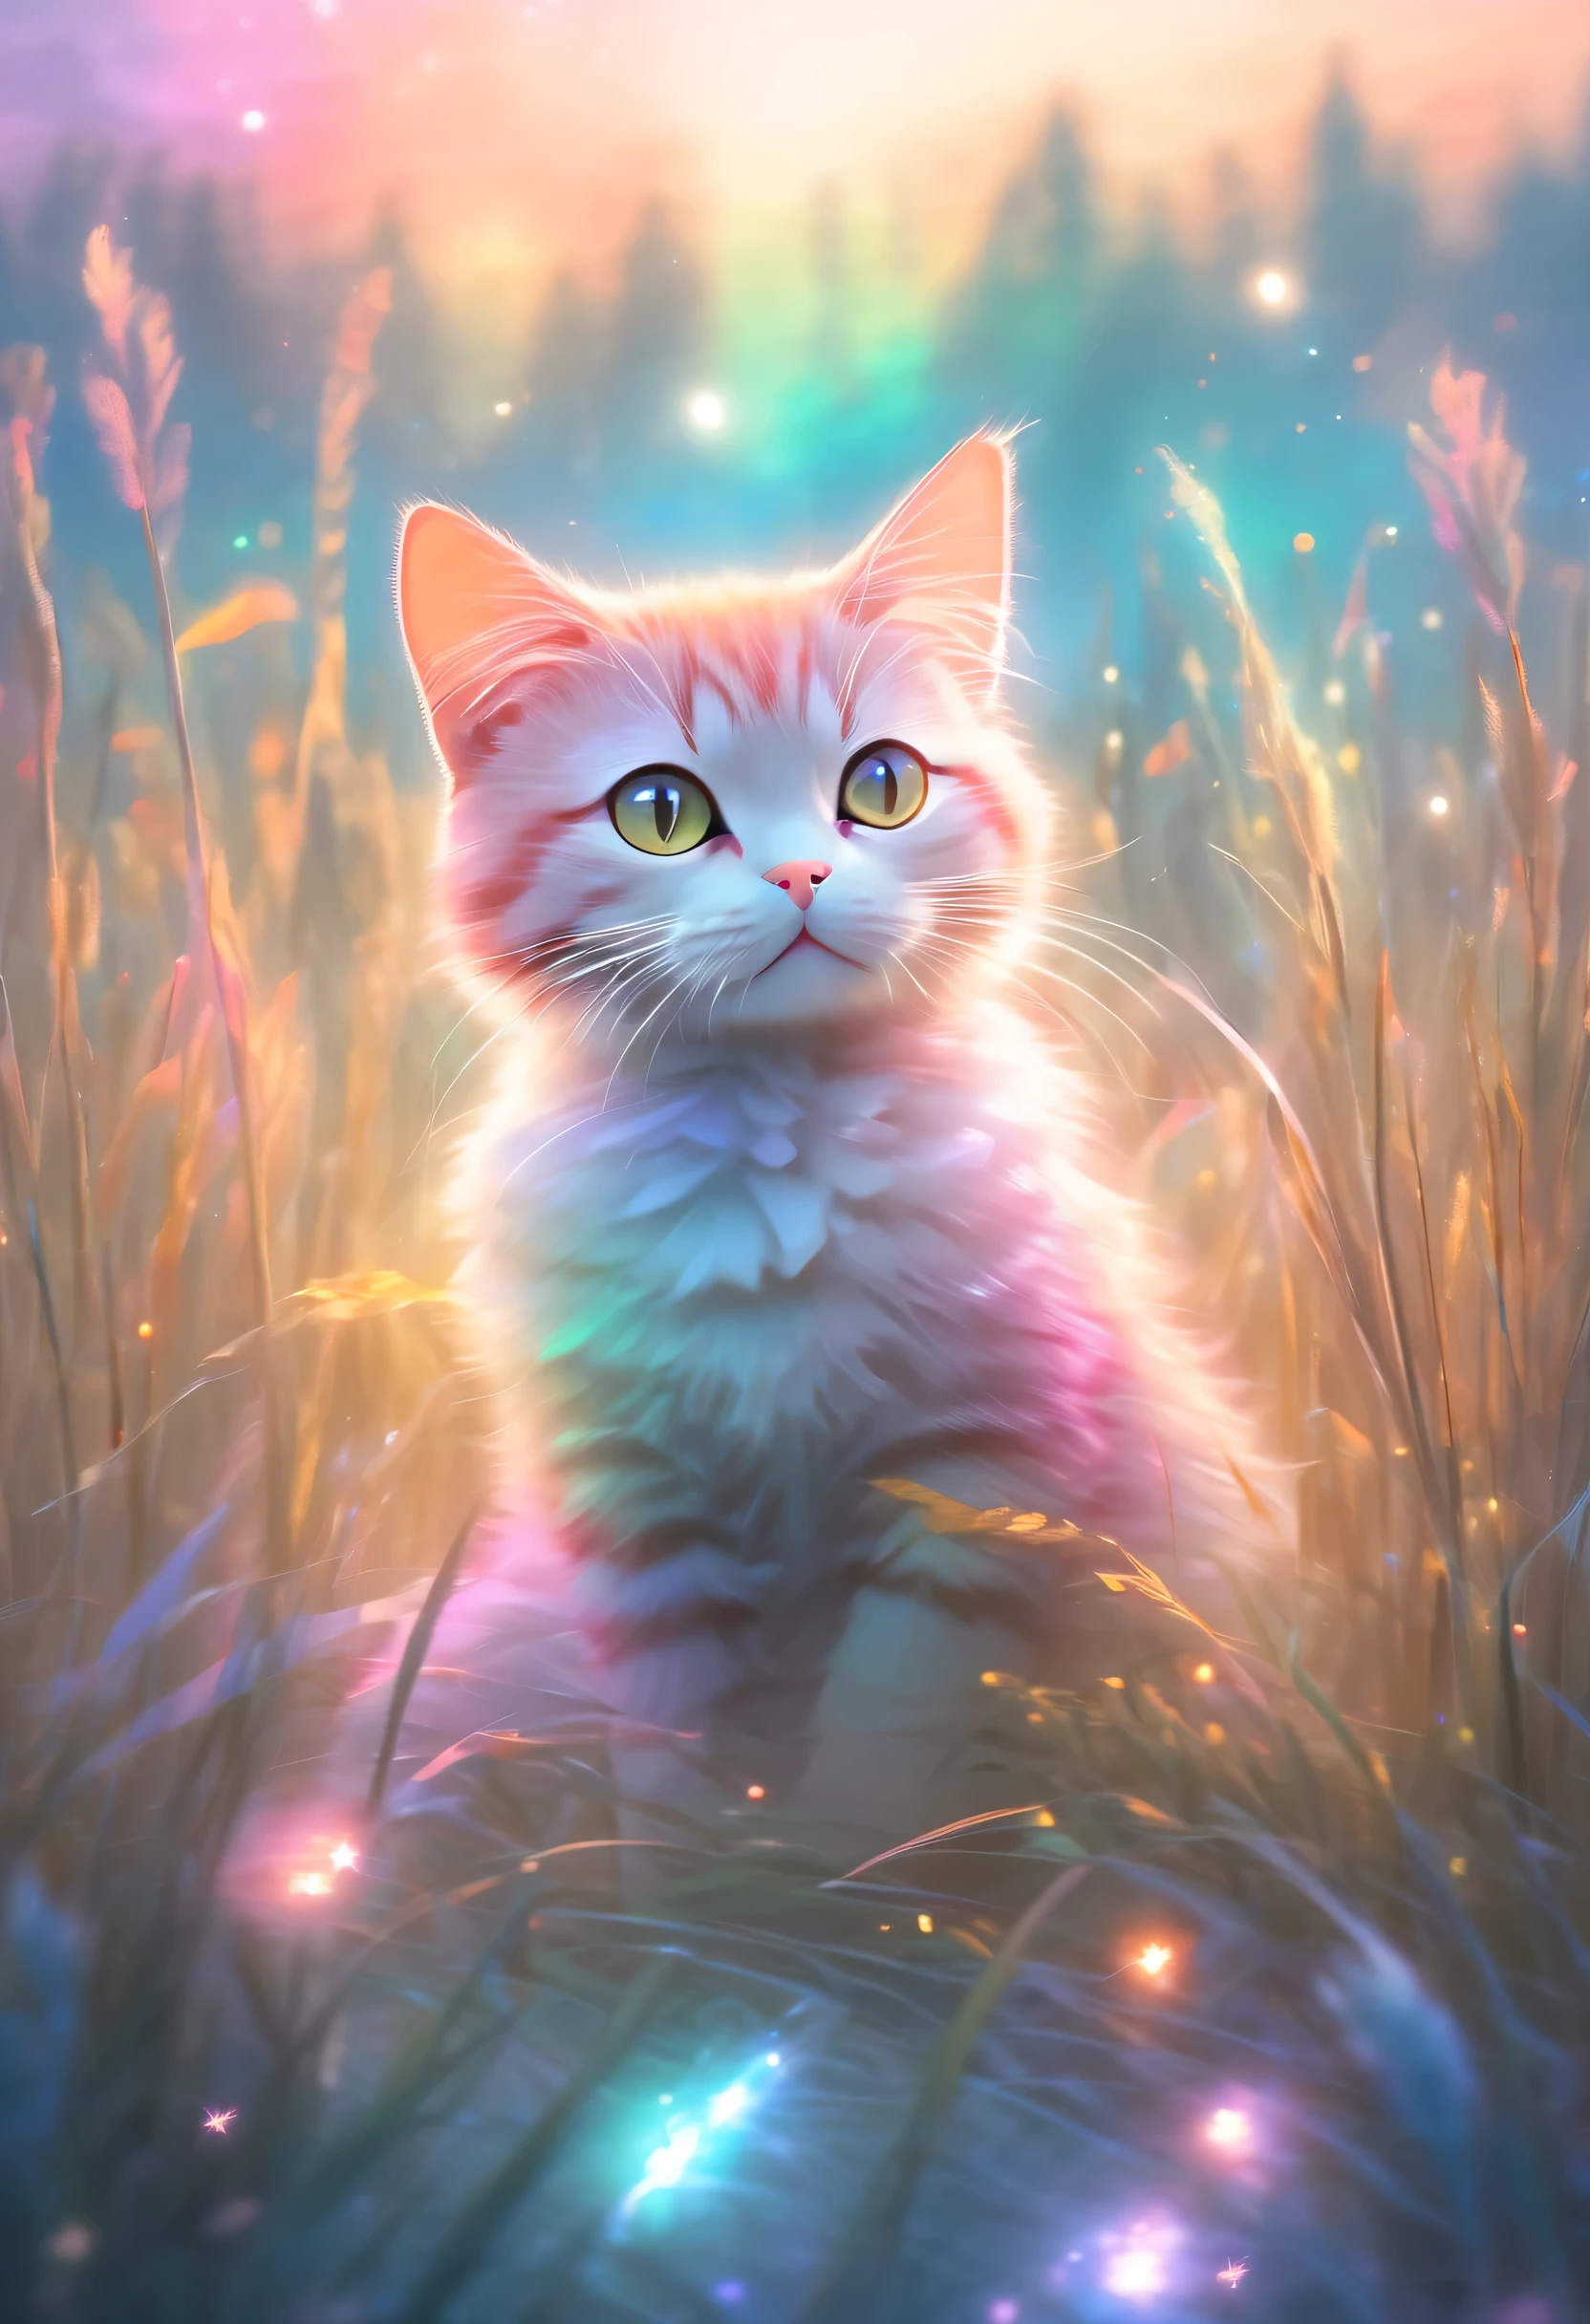 colorida、céu bem iluminado，Um gato sentado em um campo cercado por grama alta, Estilo de pintura pastel, efeitos de luz etérea, Imagem de floresta atmosférica clara,Trupe de Arte Estelar (xing xing)